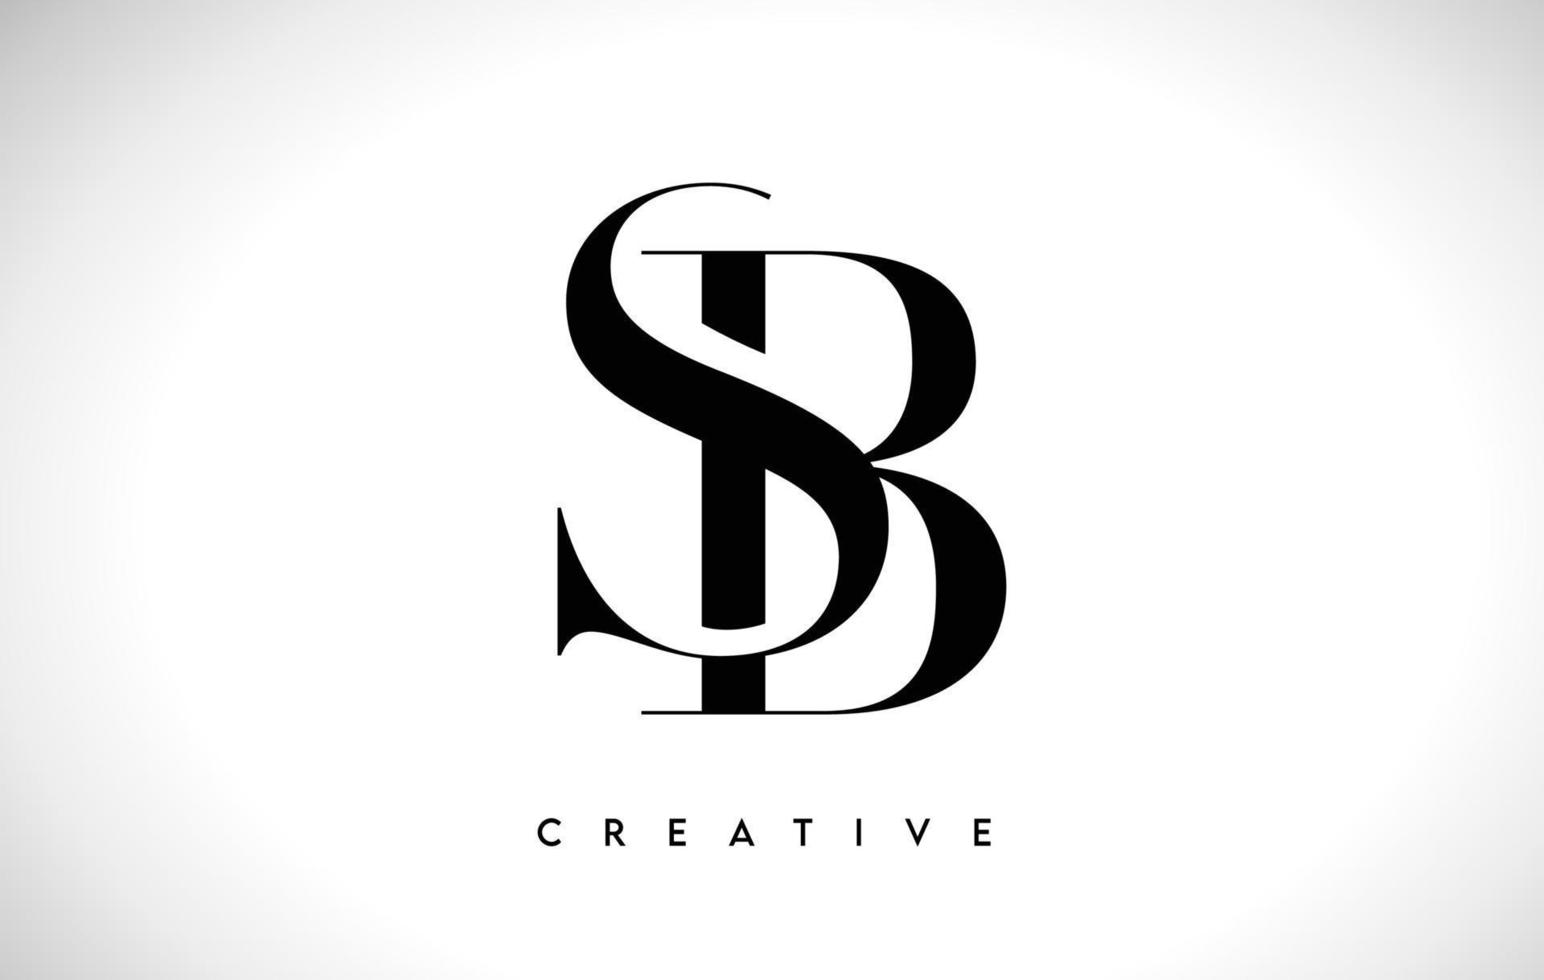 sb lettera artistica logo design con font serif in colori bianco e nero illustrazione vettoriale